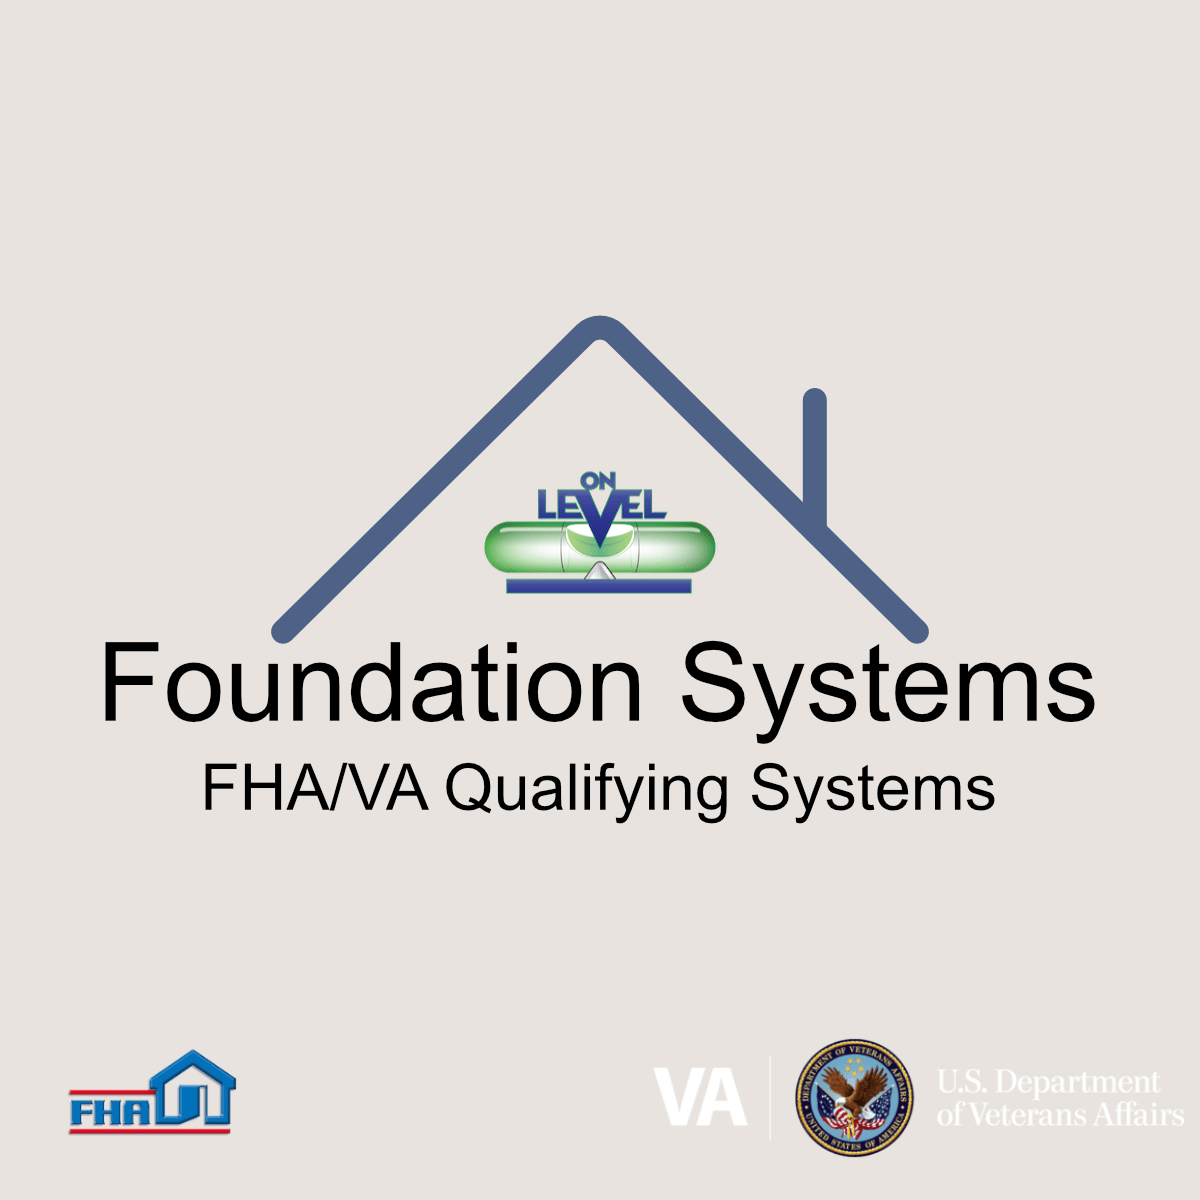 FHA and VA foundation systems